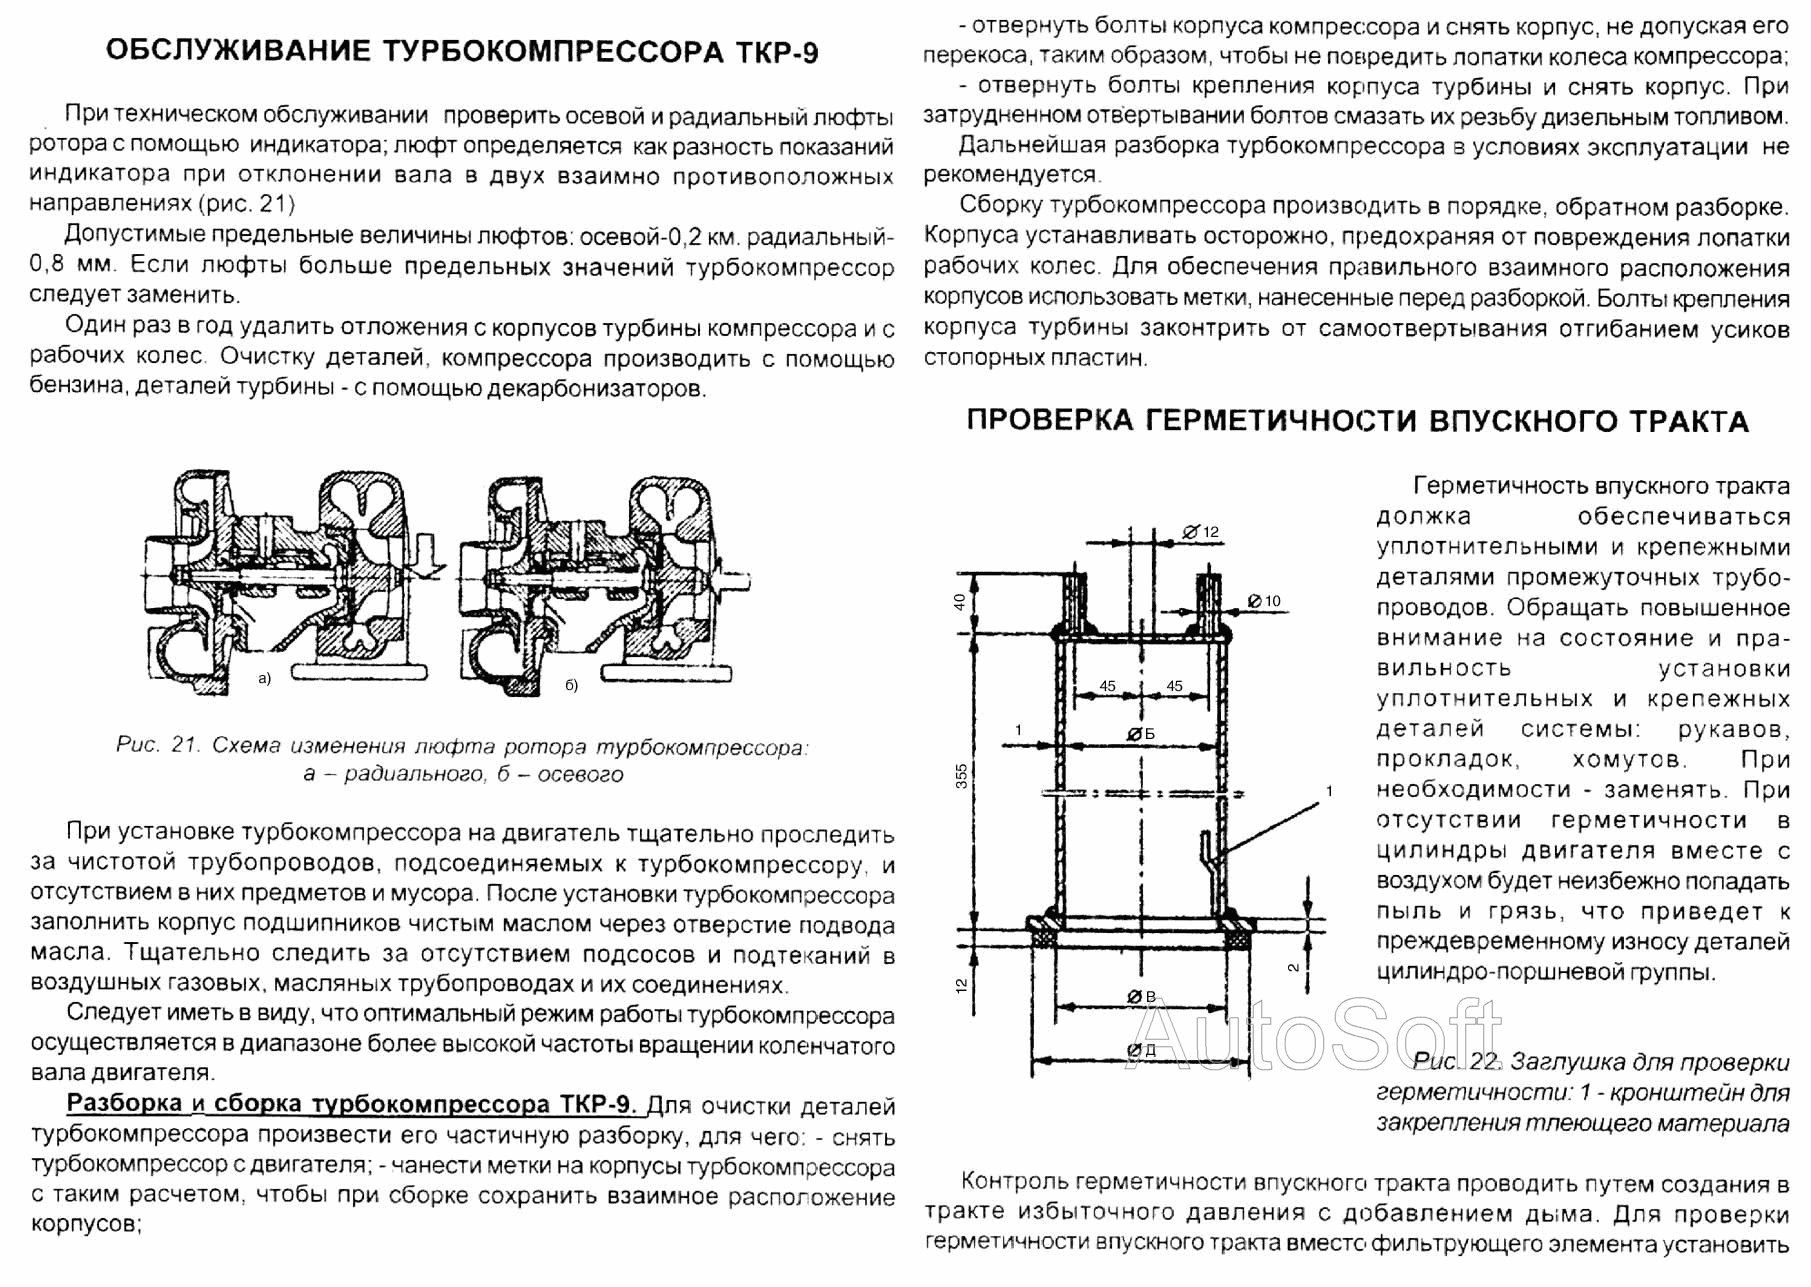 Обслуживание турбокомпрессора ТКР-9. Проверка герметичности впускного тракта ЯМЗ  7511